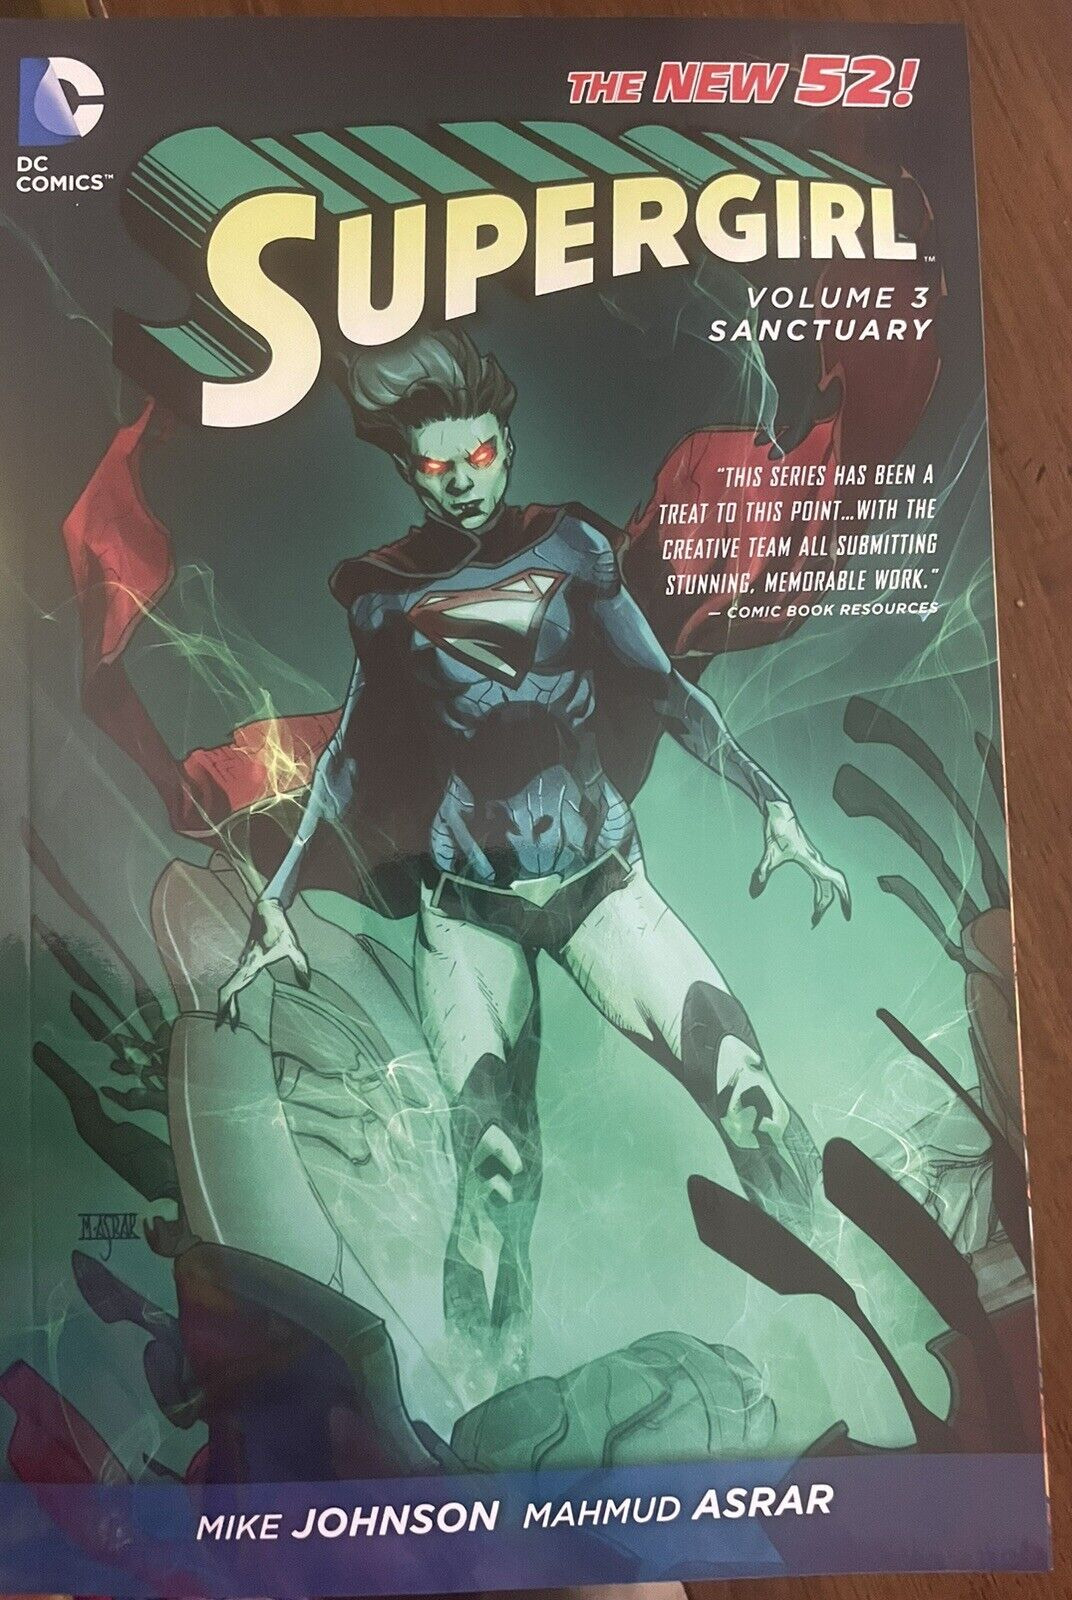 Supergirl #3 (DC Comics, April 2014)